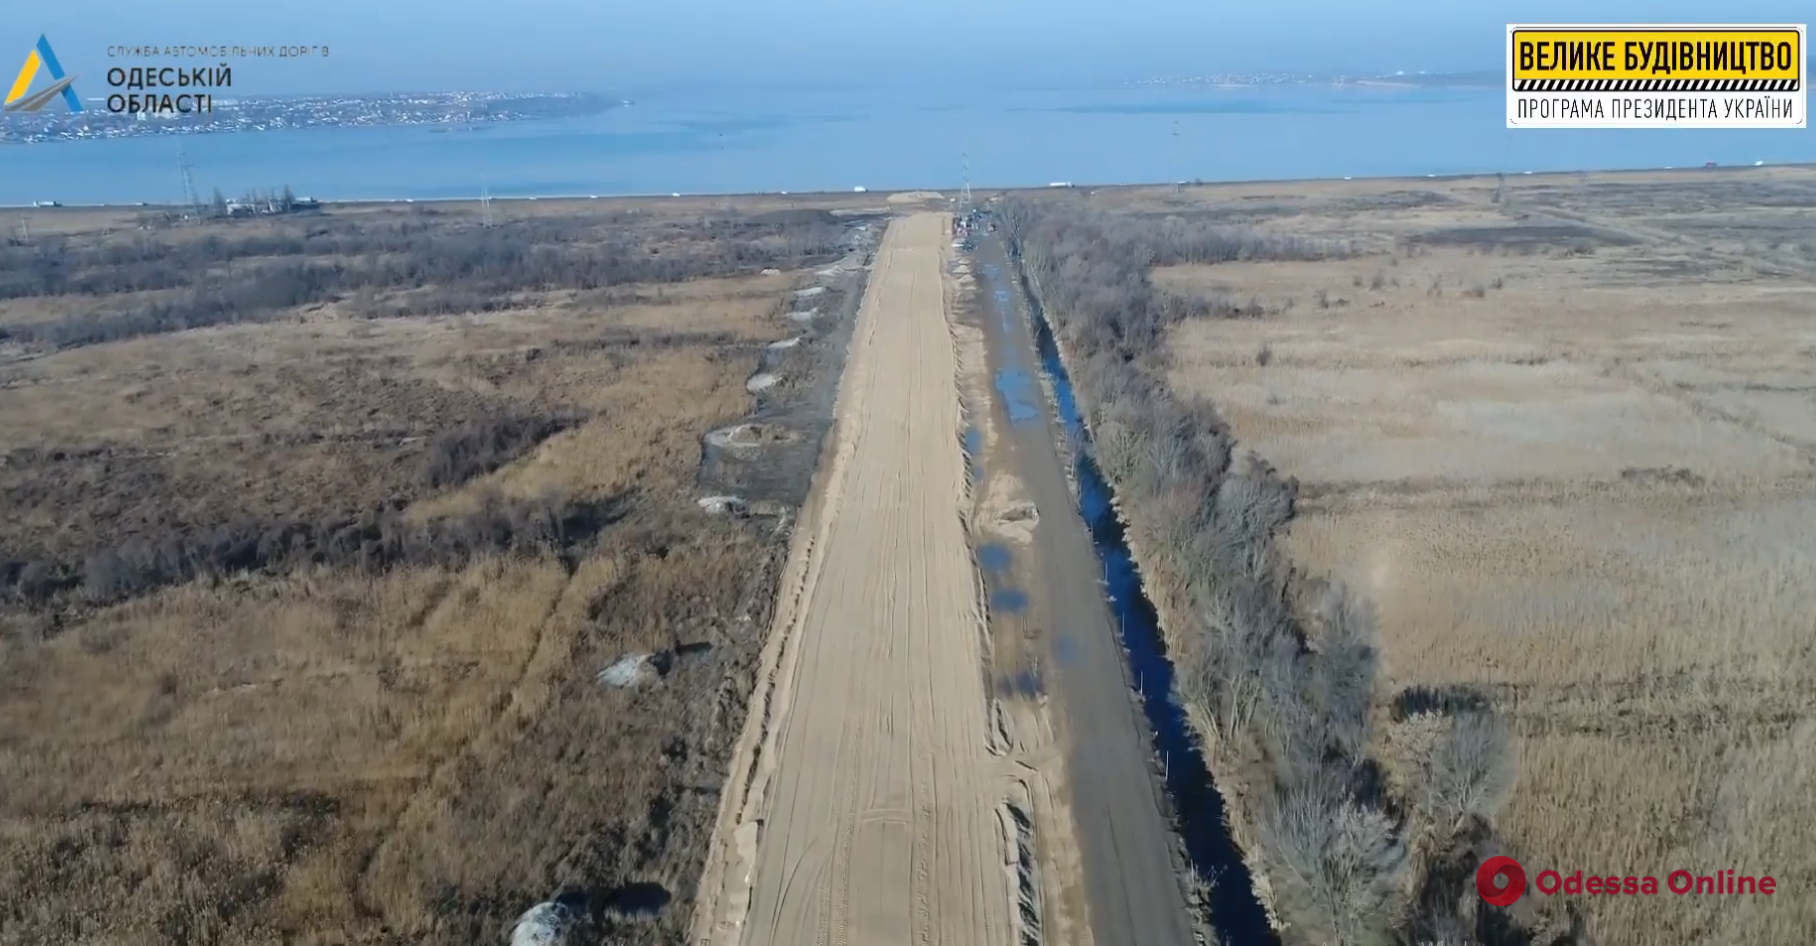 Дорога в Одесский морской порт: установлены первые три опоры эстакады